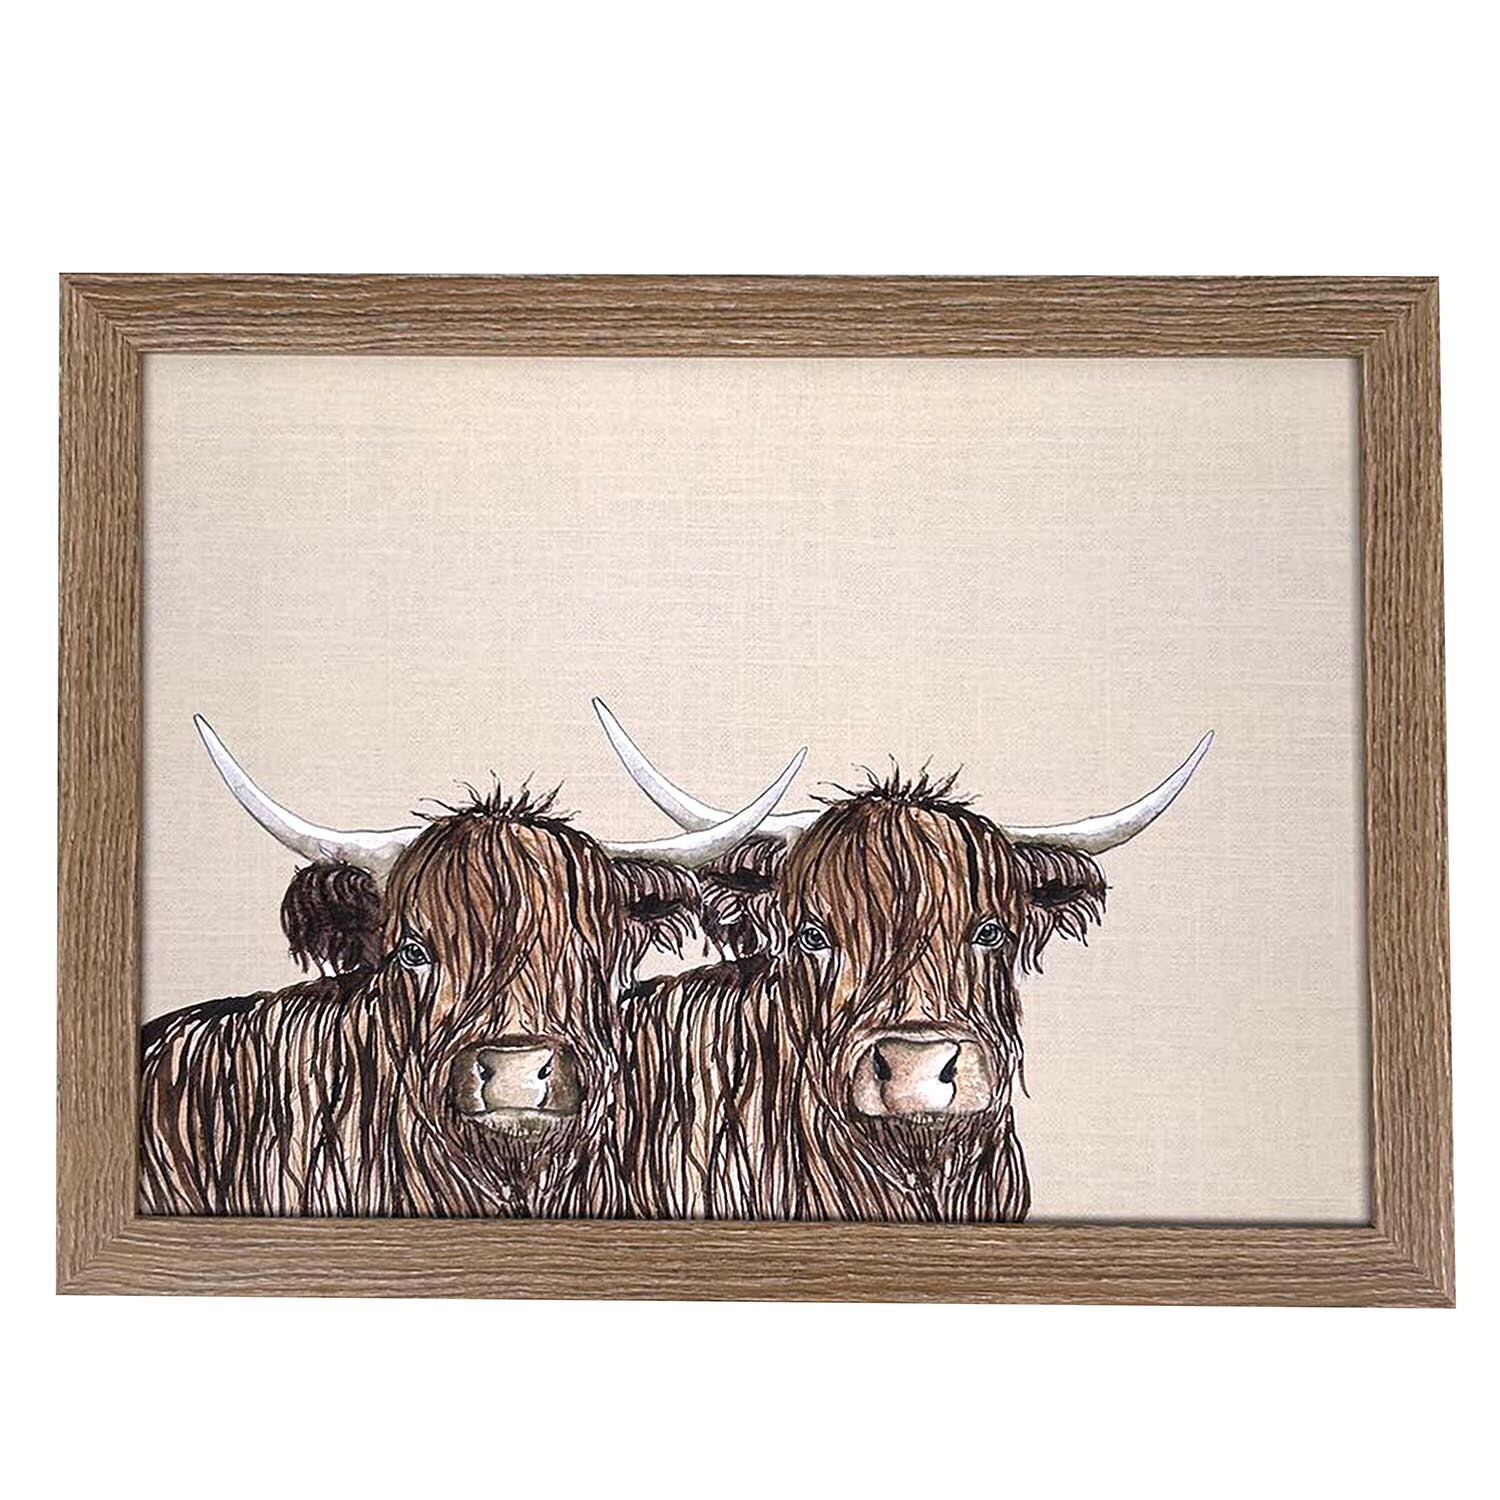 Highland Cow Lap Tray - Grey Image 3